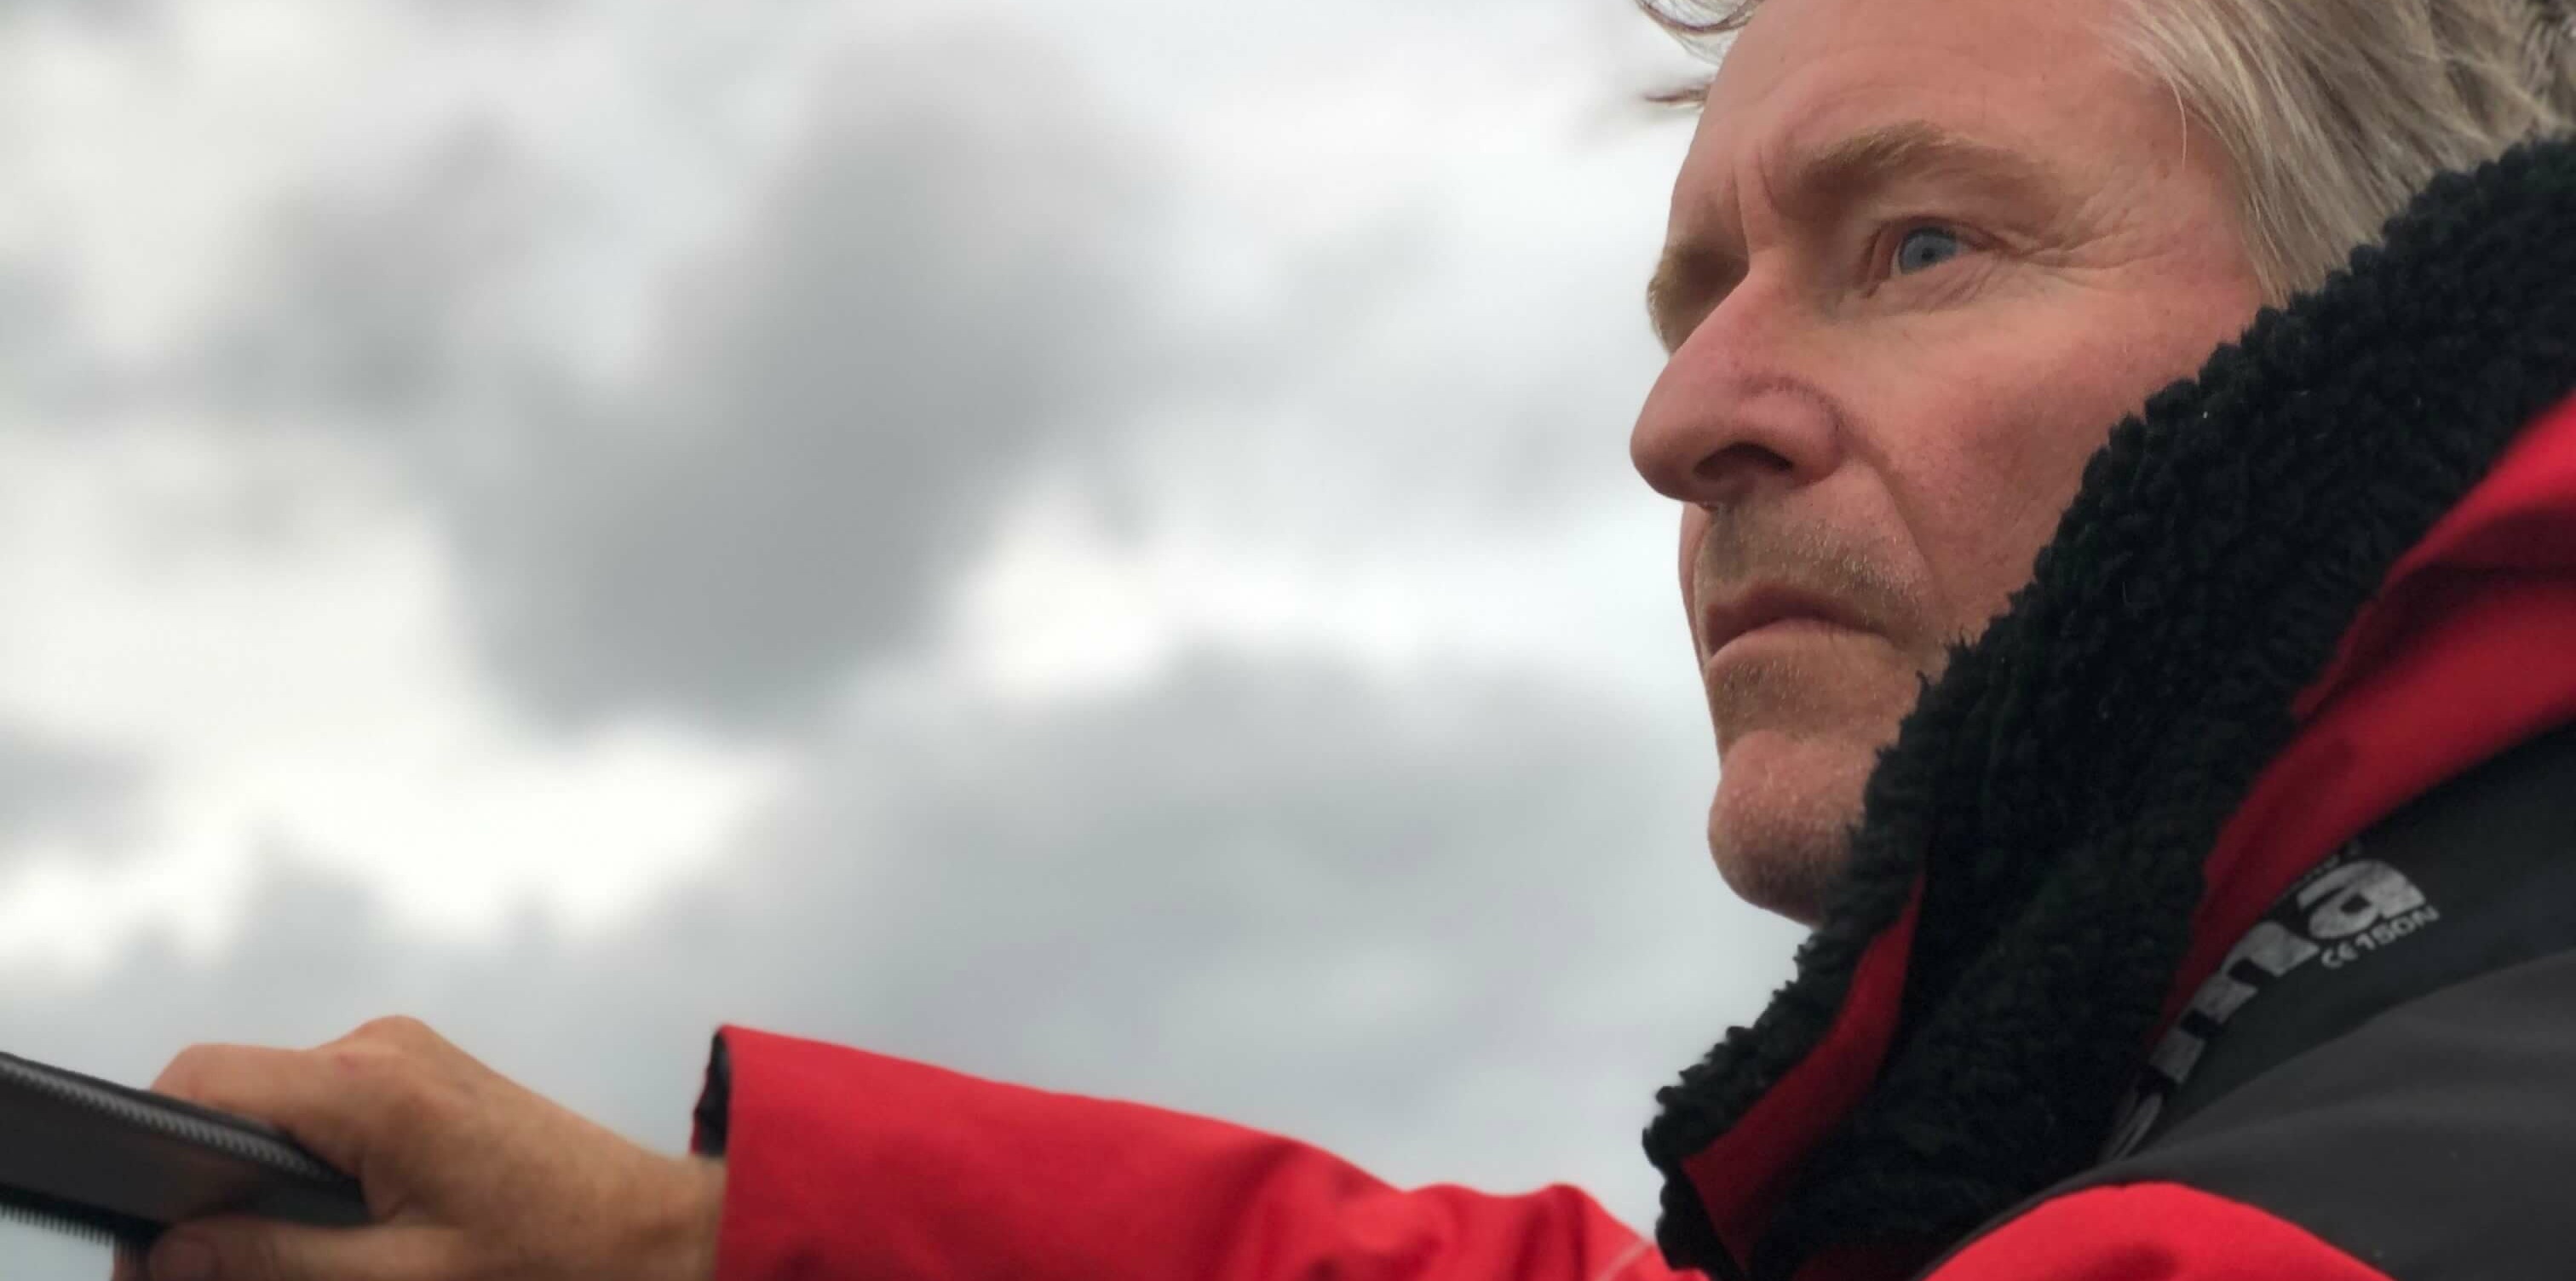 Skuespiller Henrik Mestad står til rors i en båt. Han har på seg en rød kjeledress og ser utover horisonten